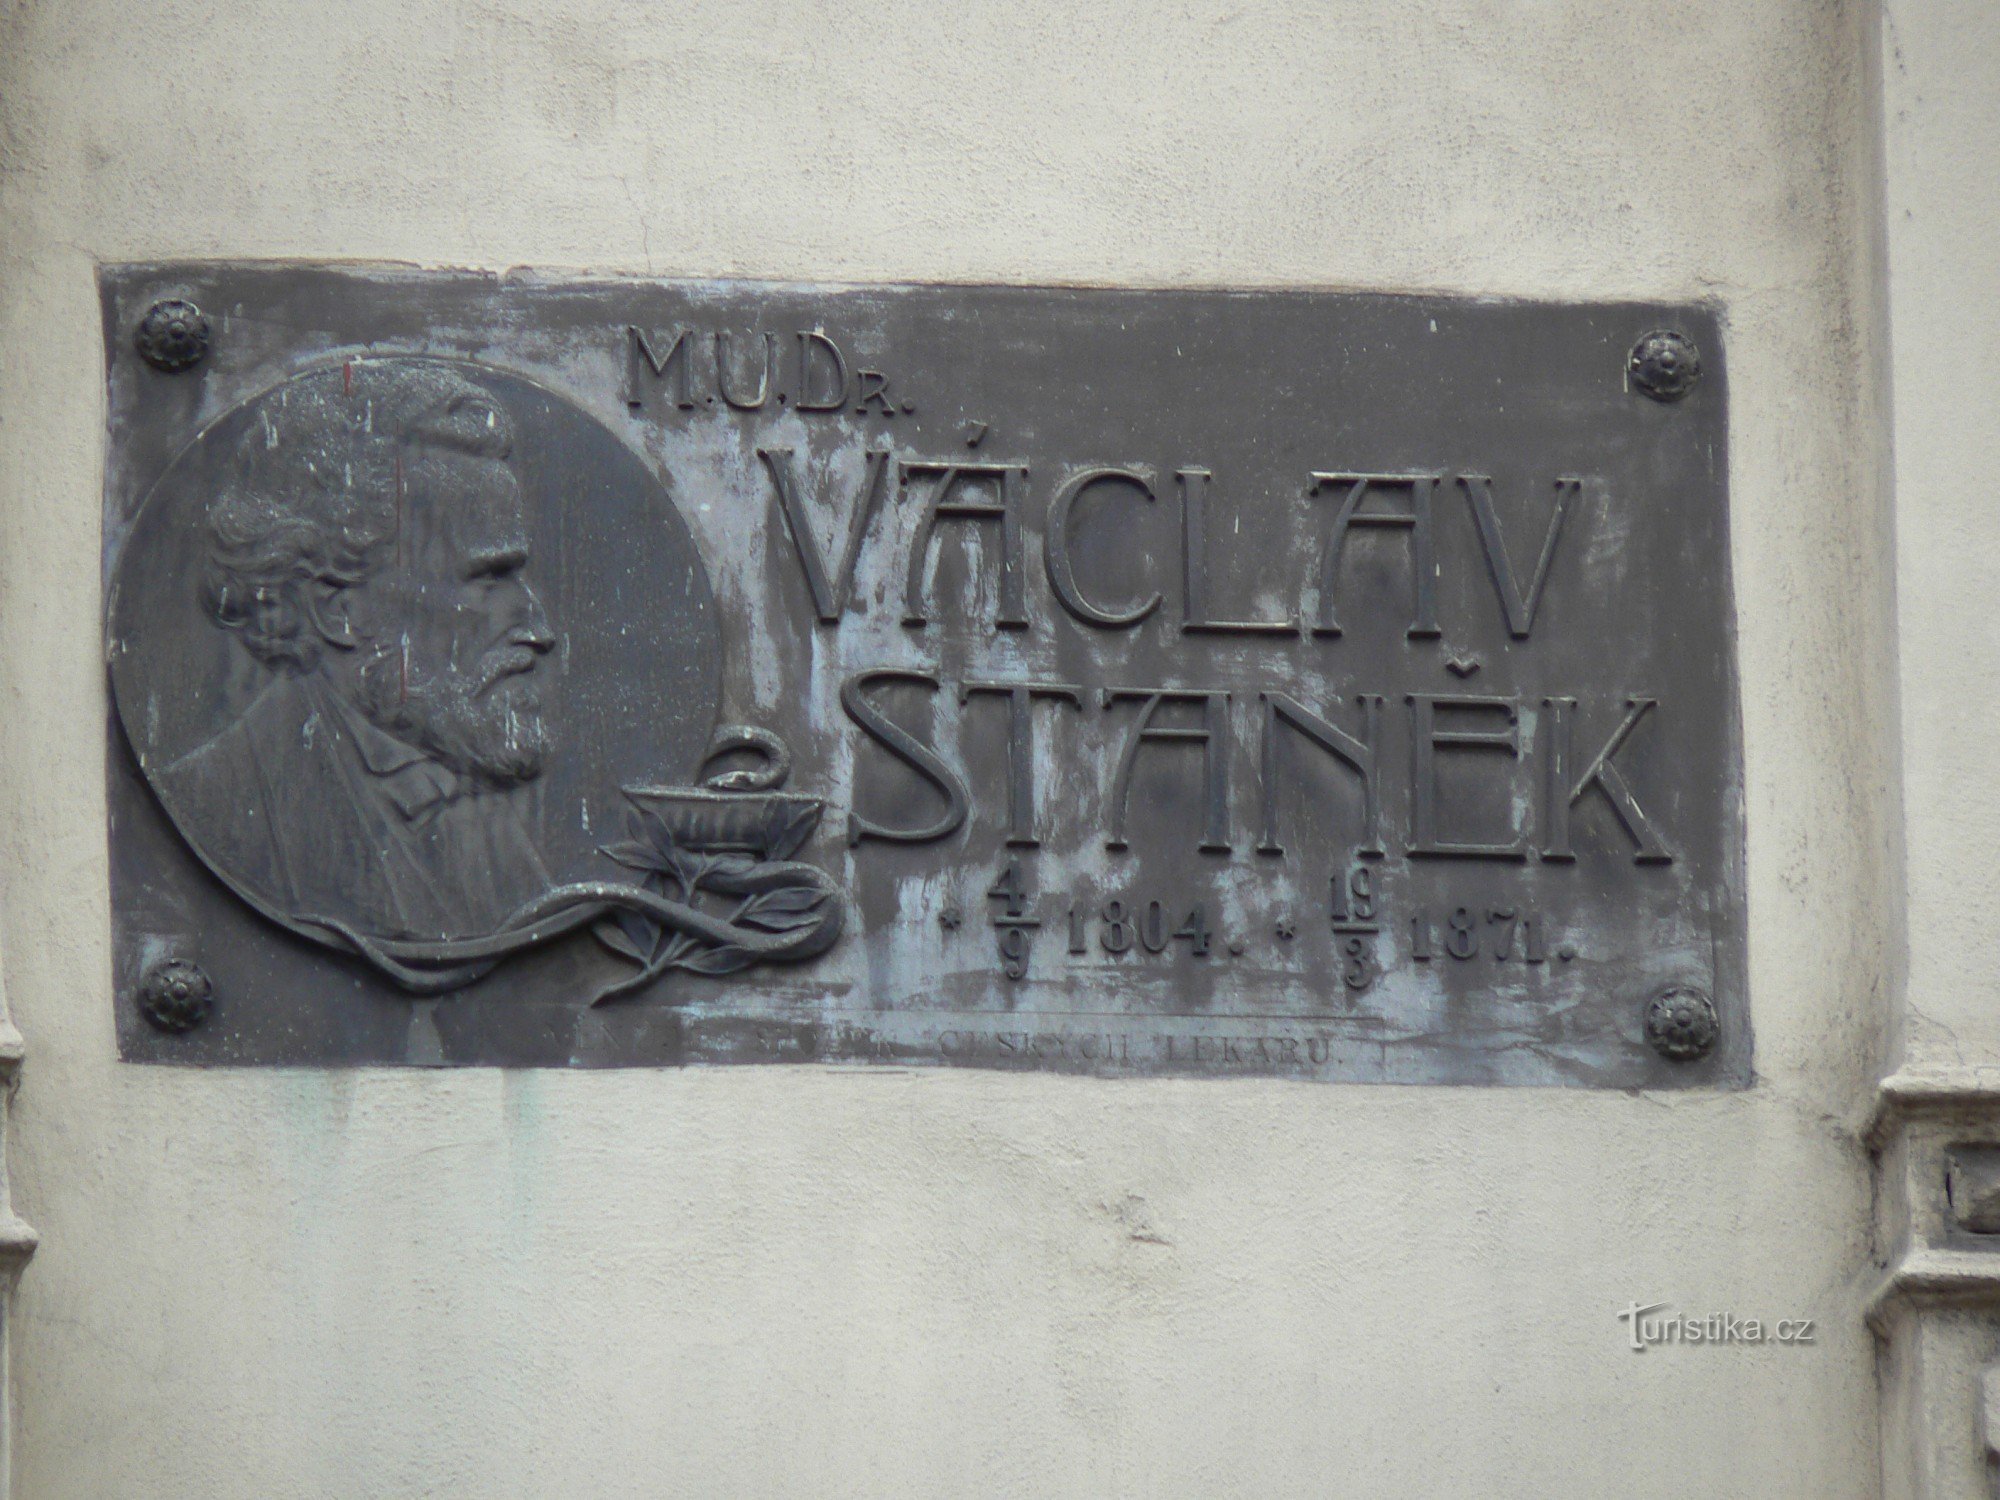 Placa comemorativa MUDr. Václav Stanek